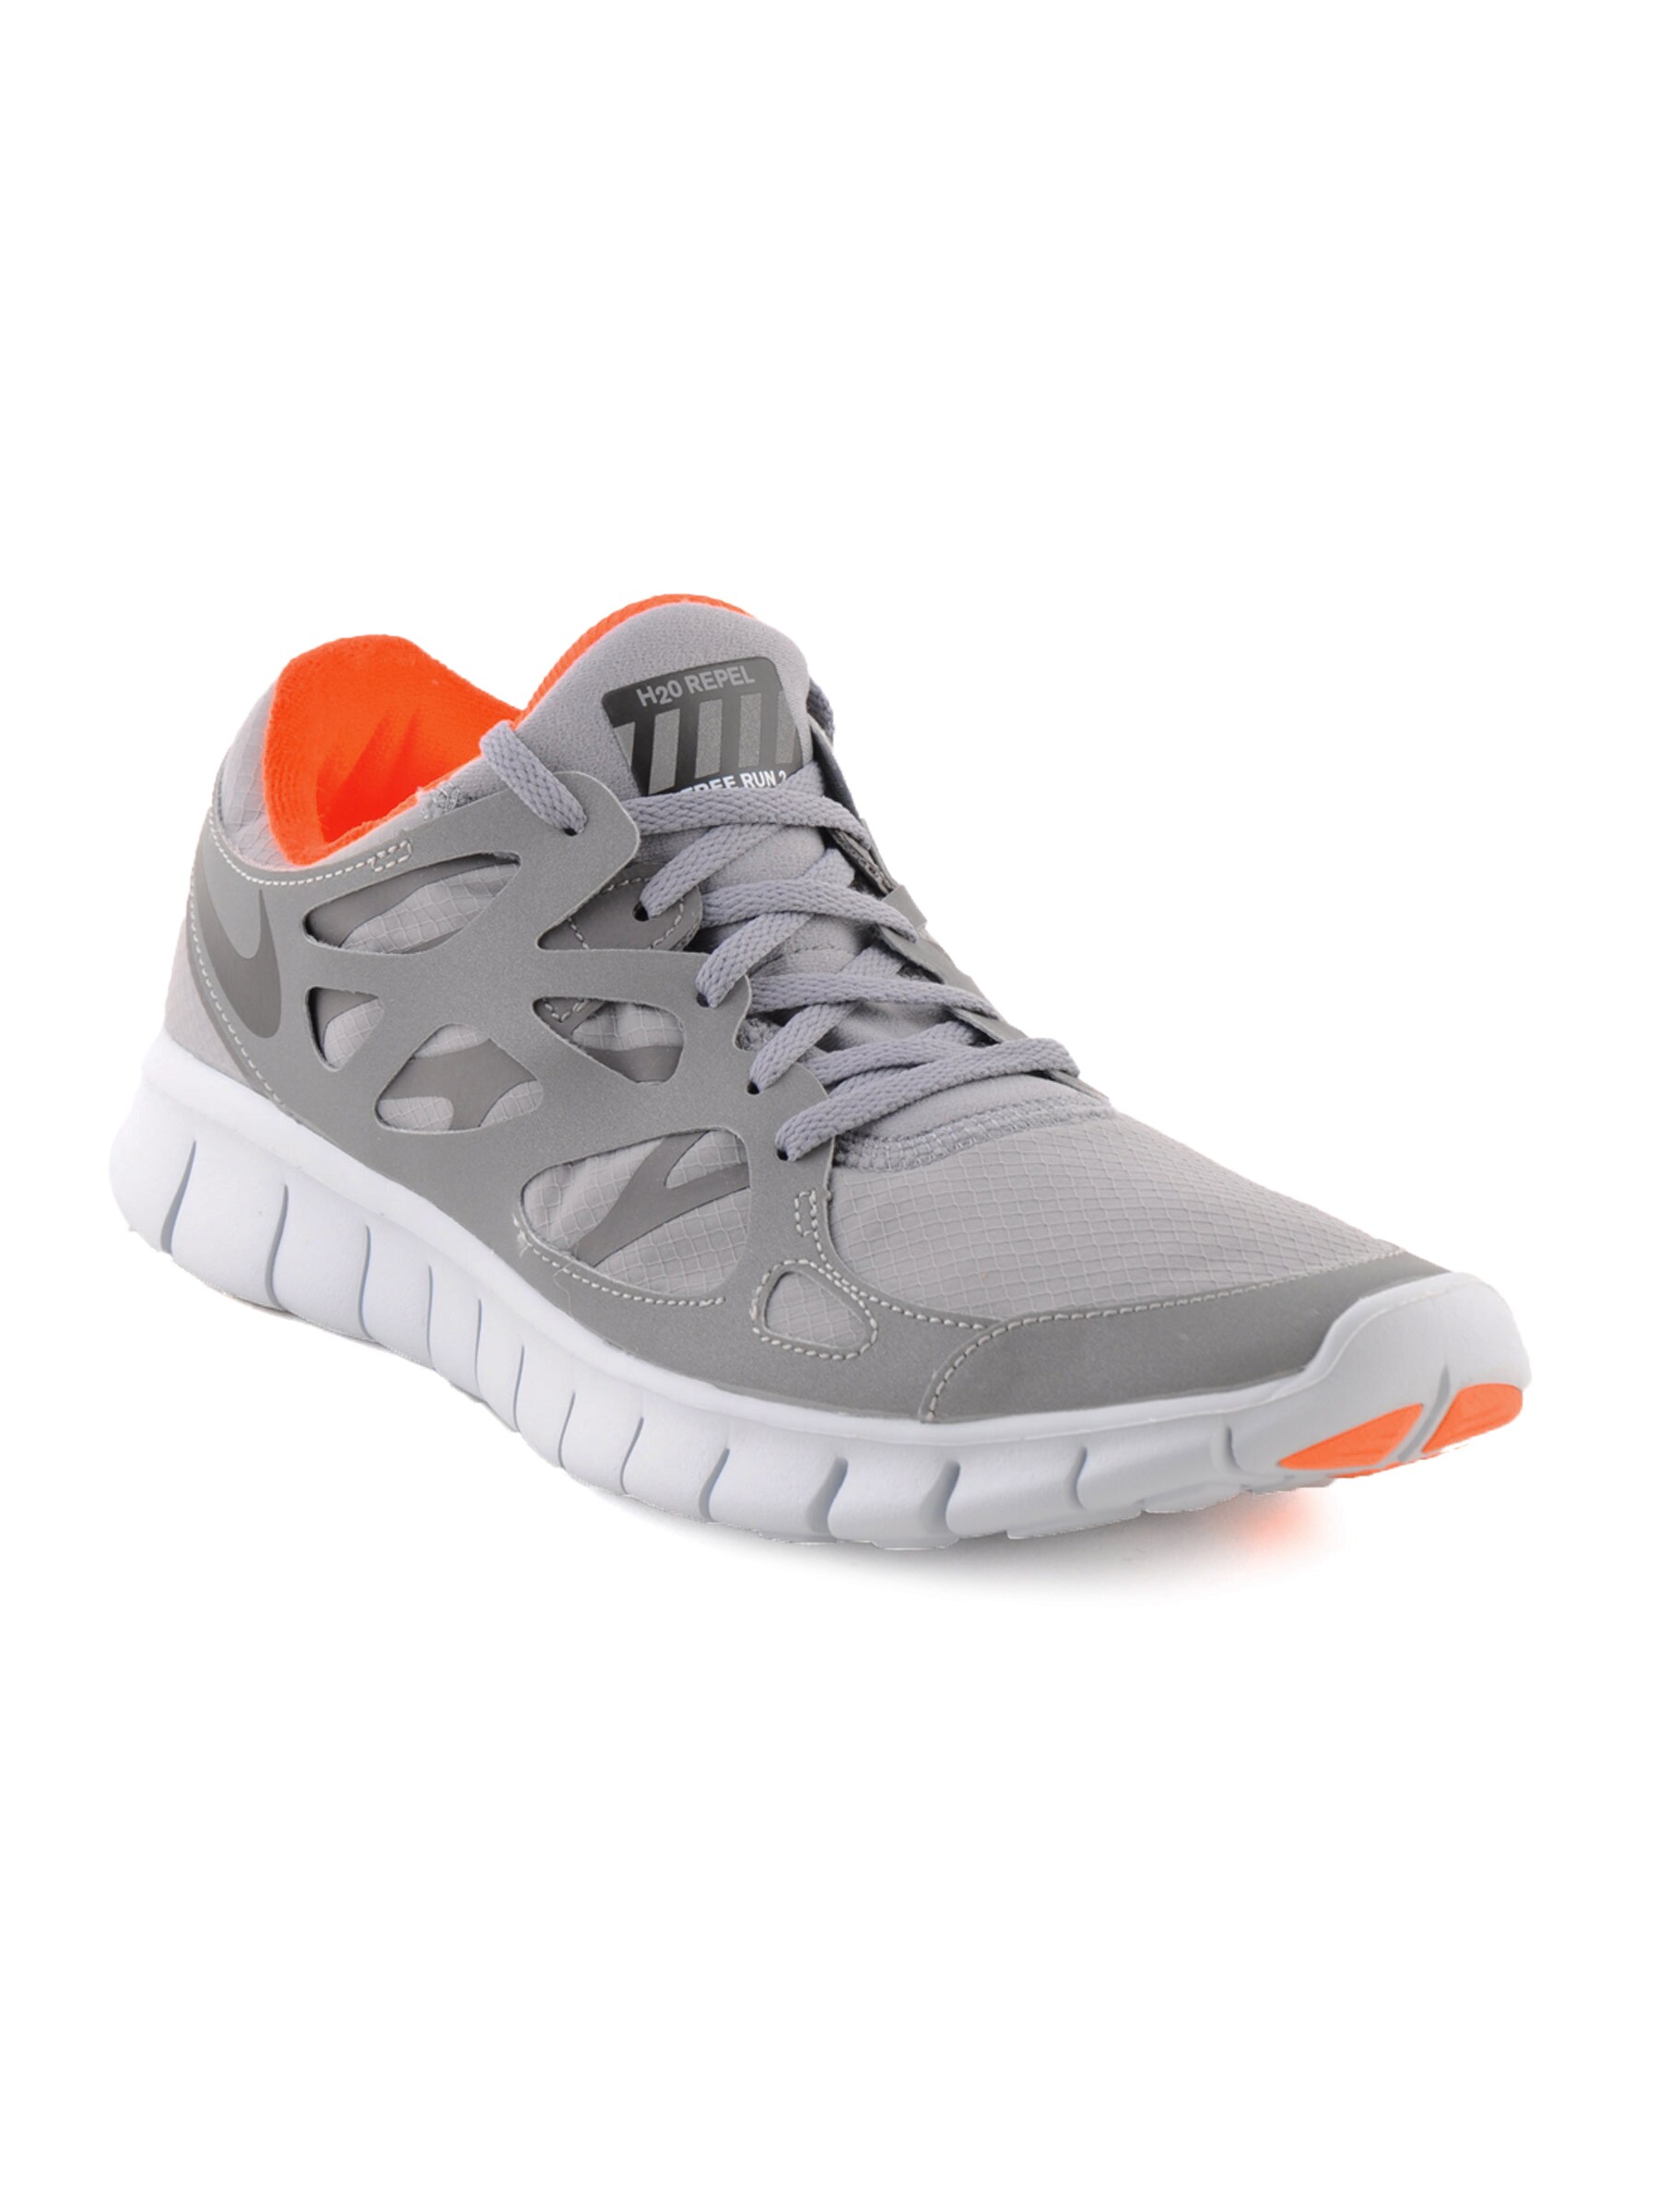 Nike Men Free Run+ 2 Shield Grey Sports Shoes